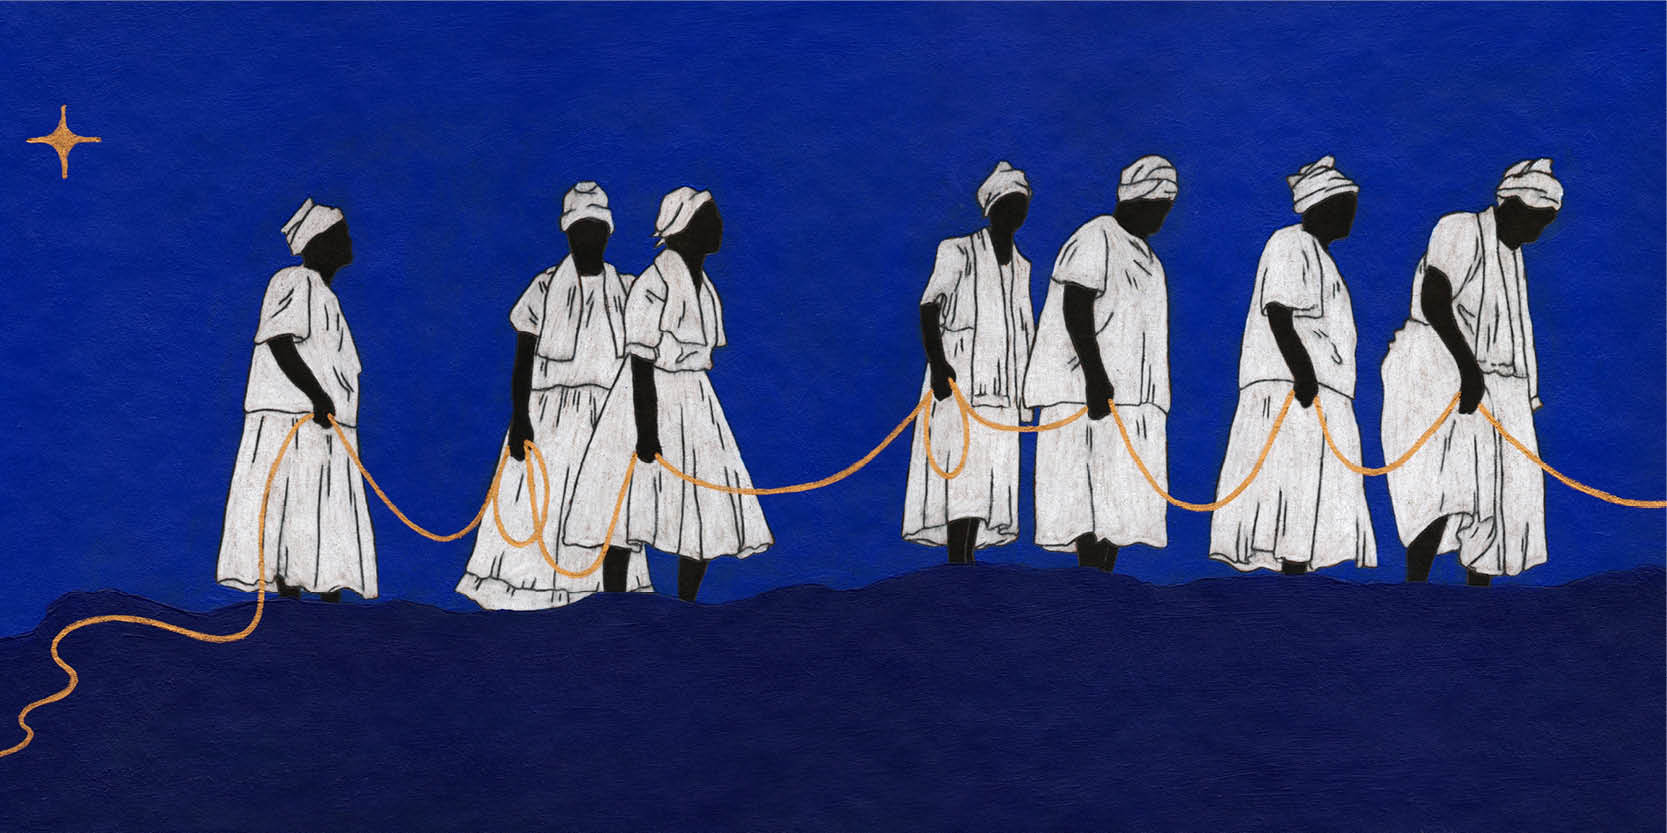 Pintura mostra sete mulheres negras vestidas de branco, com lenços nas cabeças. Elas caminham da esquerda para a direita e seguram uma corda dourada, que as une. O fundo é azul escuro no chão e azul mais claro no céu.